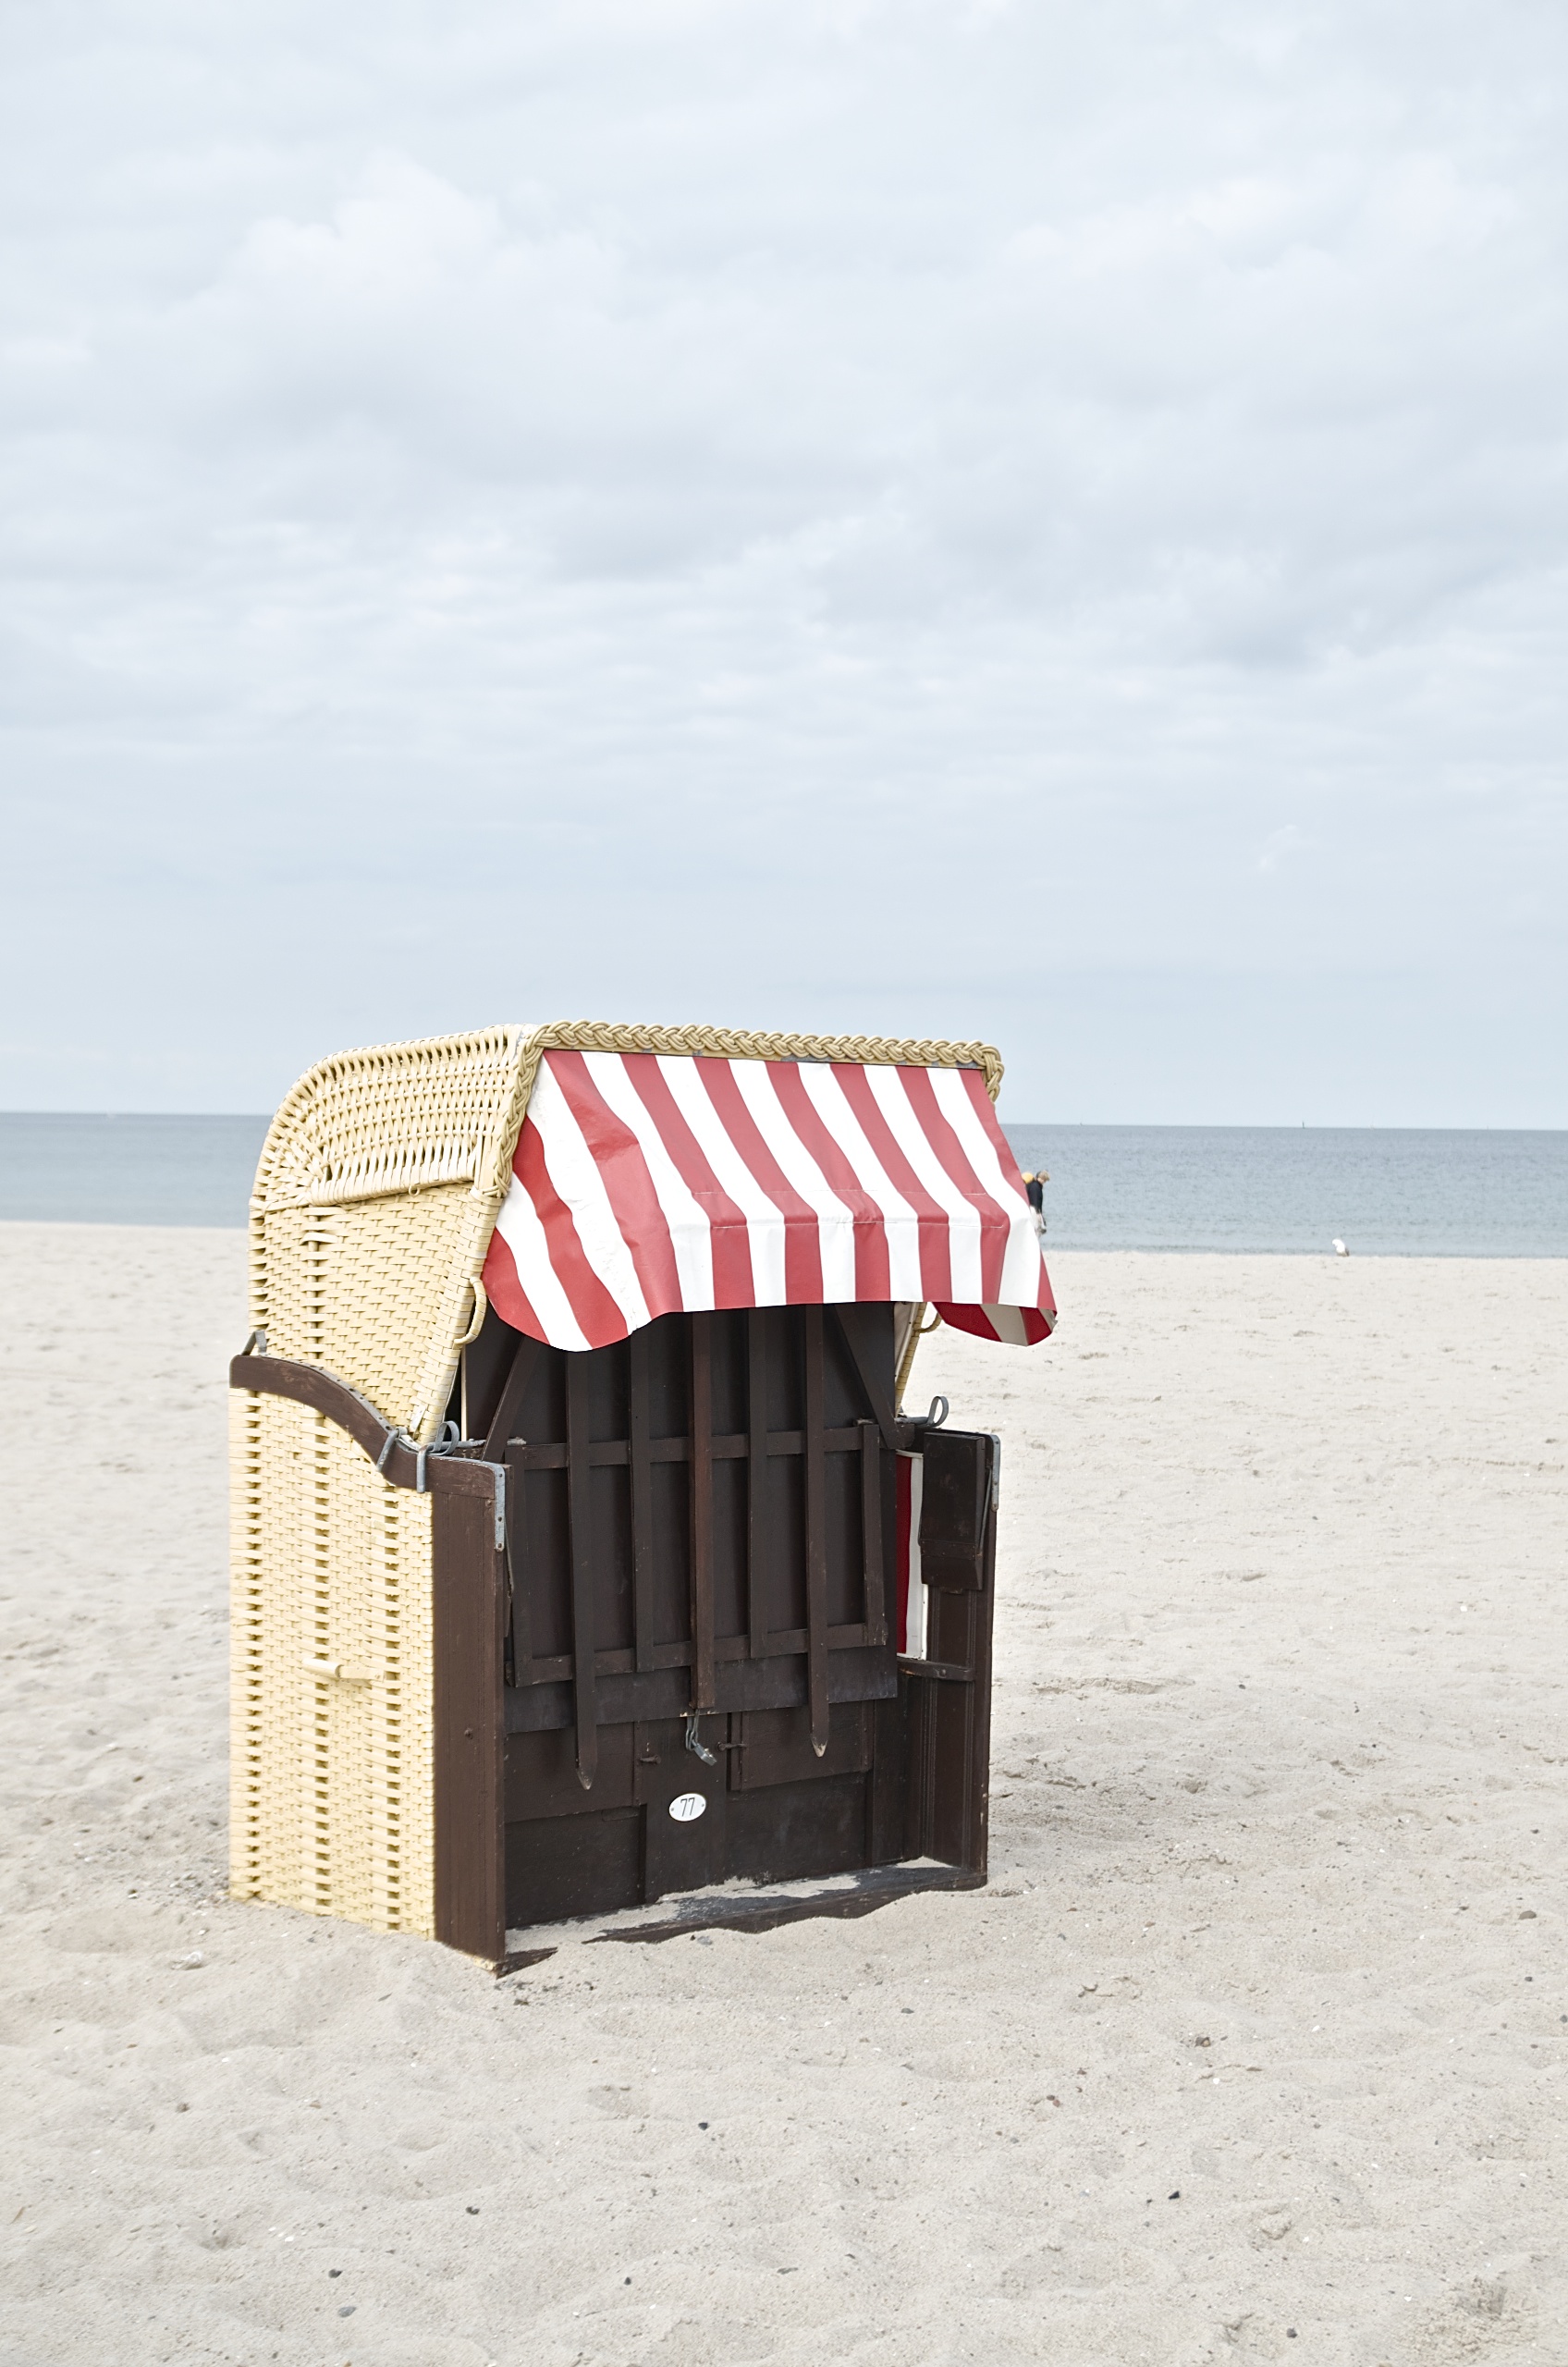 (K)Ein Tag am Meer,Strankorb am Strand in Travemünde,rot-weiß-gestreift,Sand,Himmel,Wolken